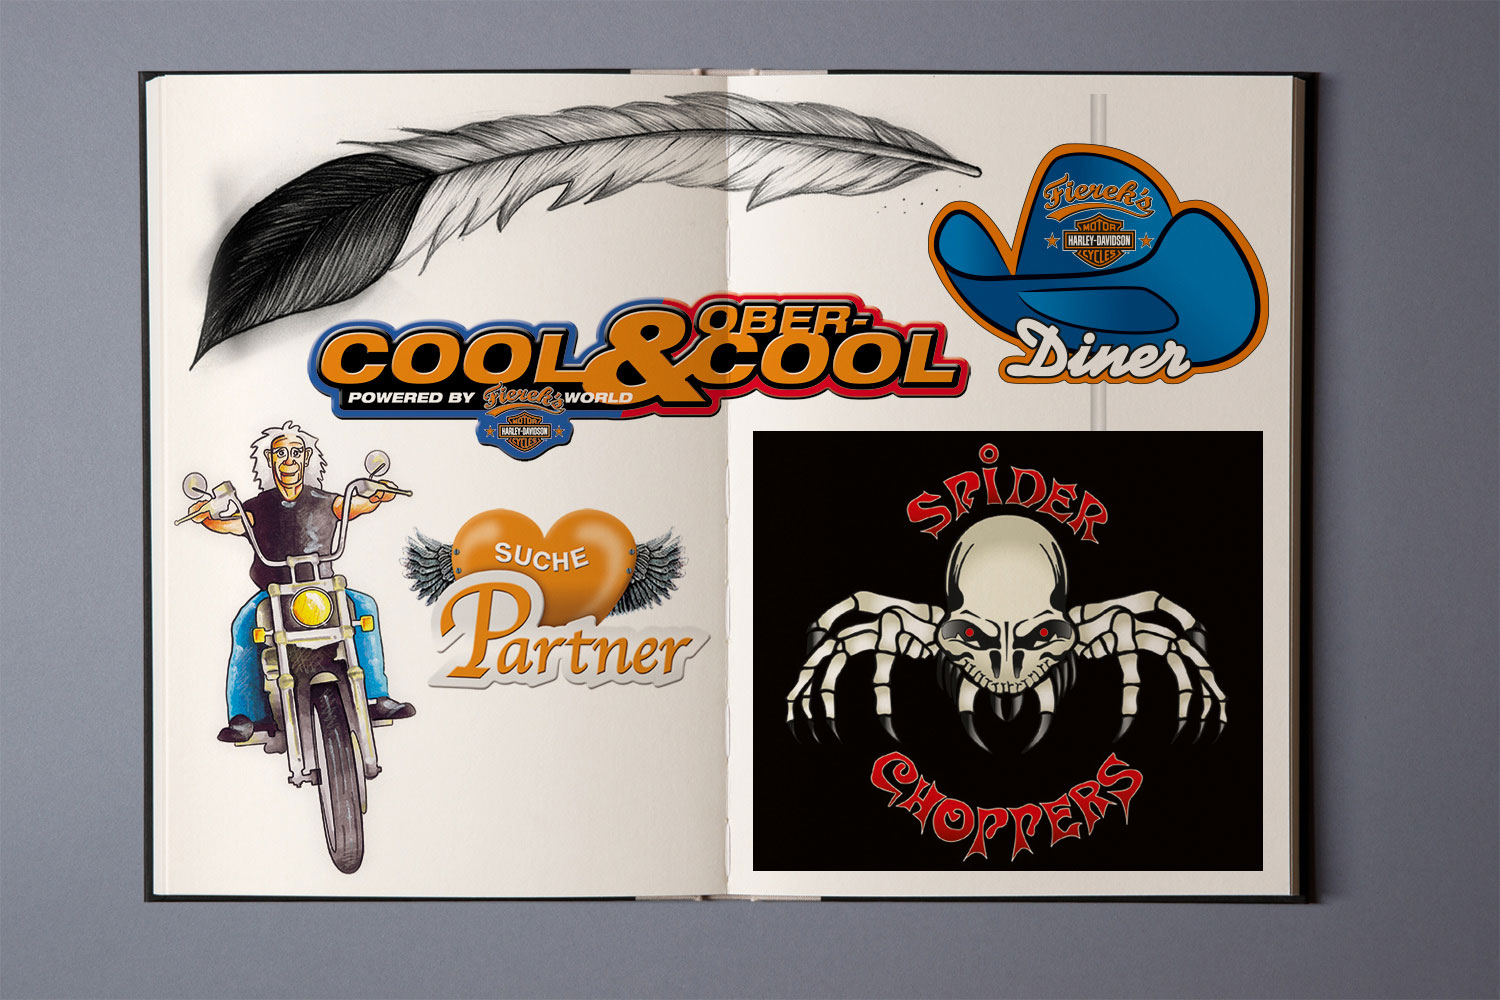  Logoentwürfe und Illustrationen, Fierek's Harley Davidson 